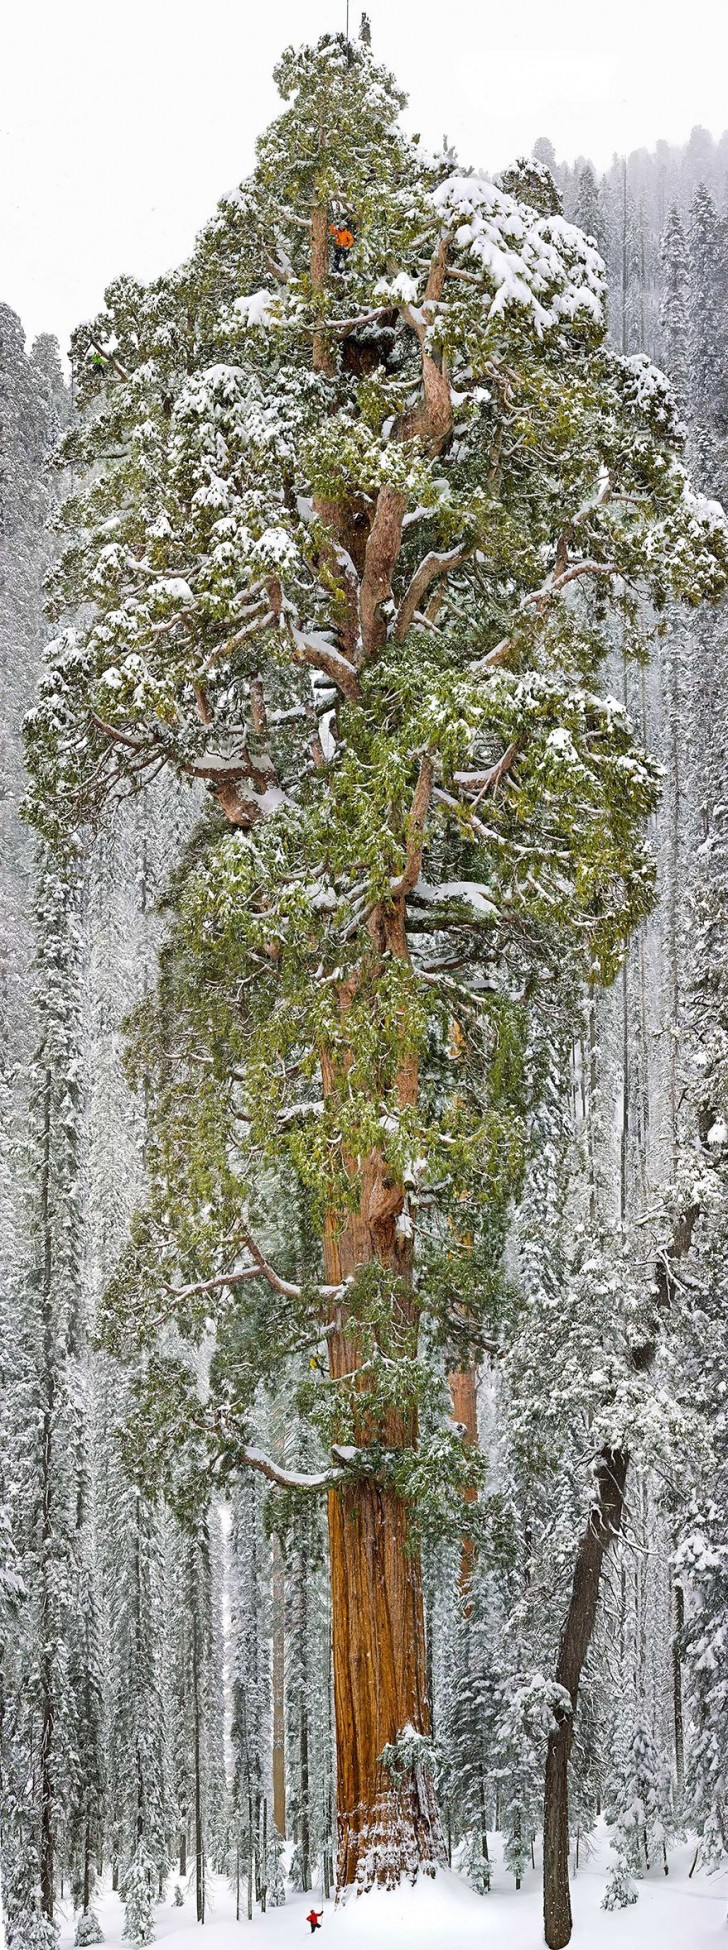 La terza sequoia più grande del mondo si trova nel parco Nazionale del Sequoya, in California, dove è presente questo esemplare alto 73 metri e con una circonferenza di 28 metri.